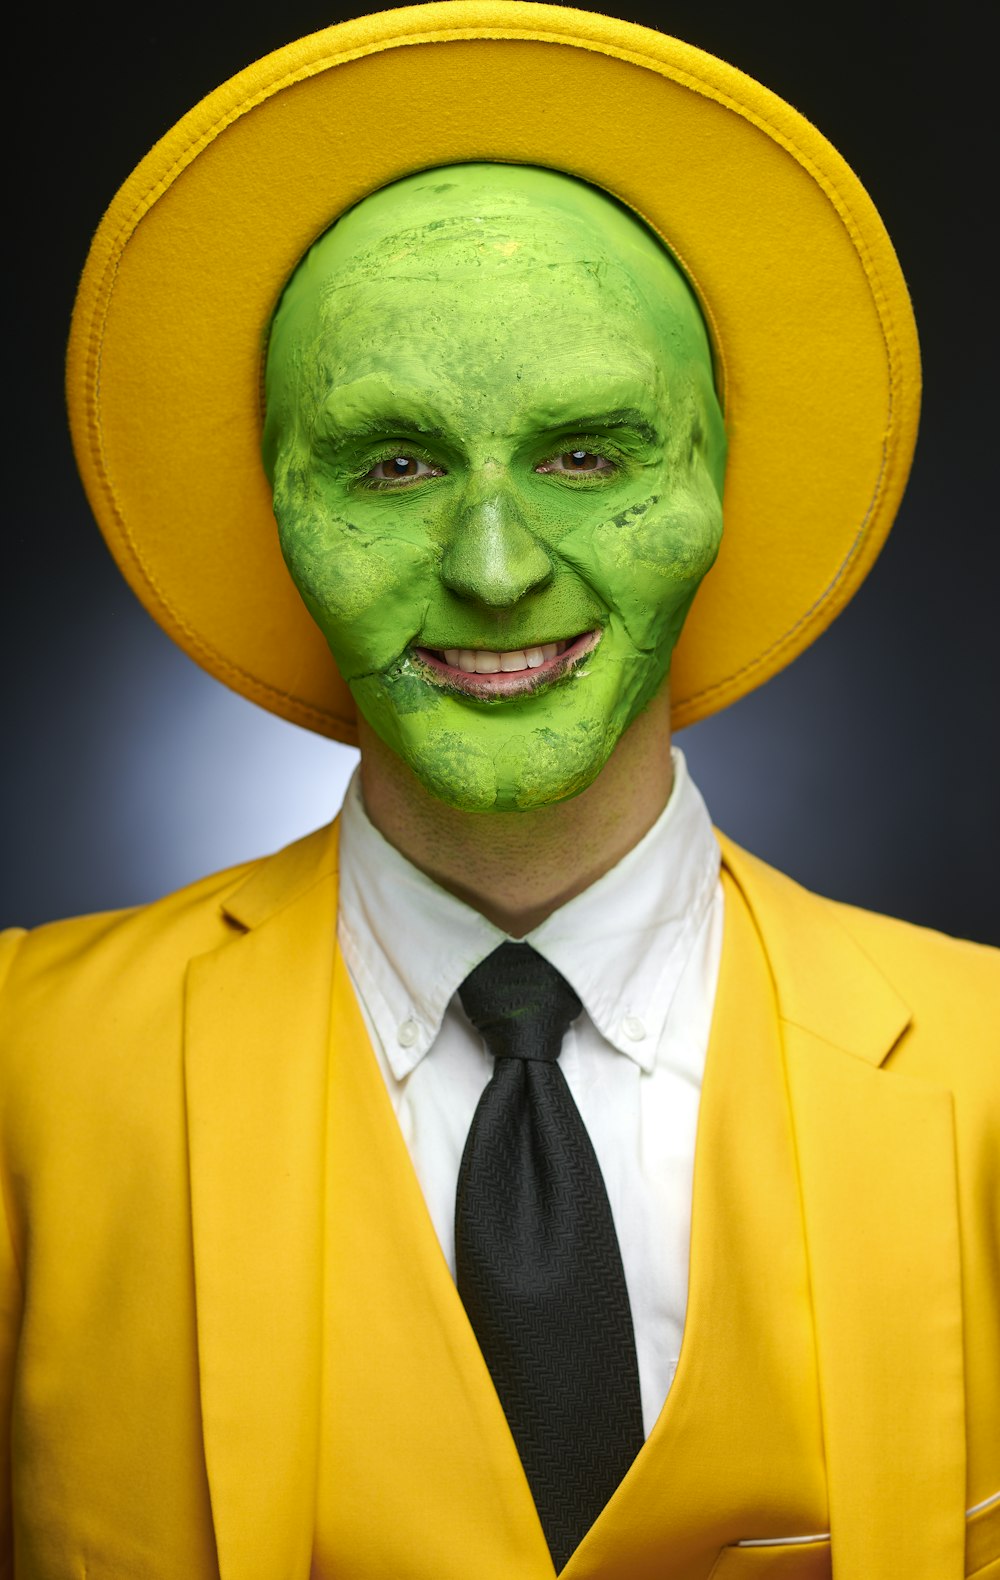 Mann mit grüner Maske